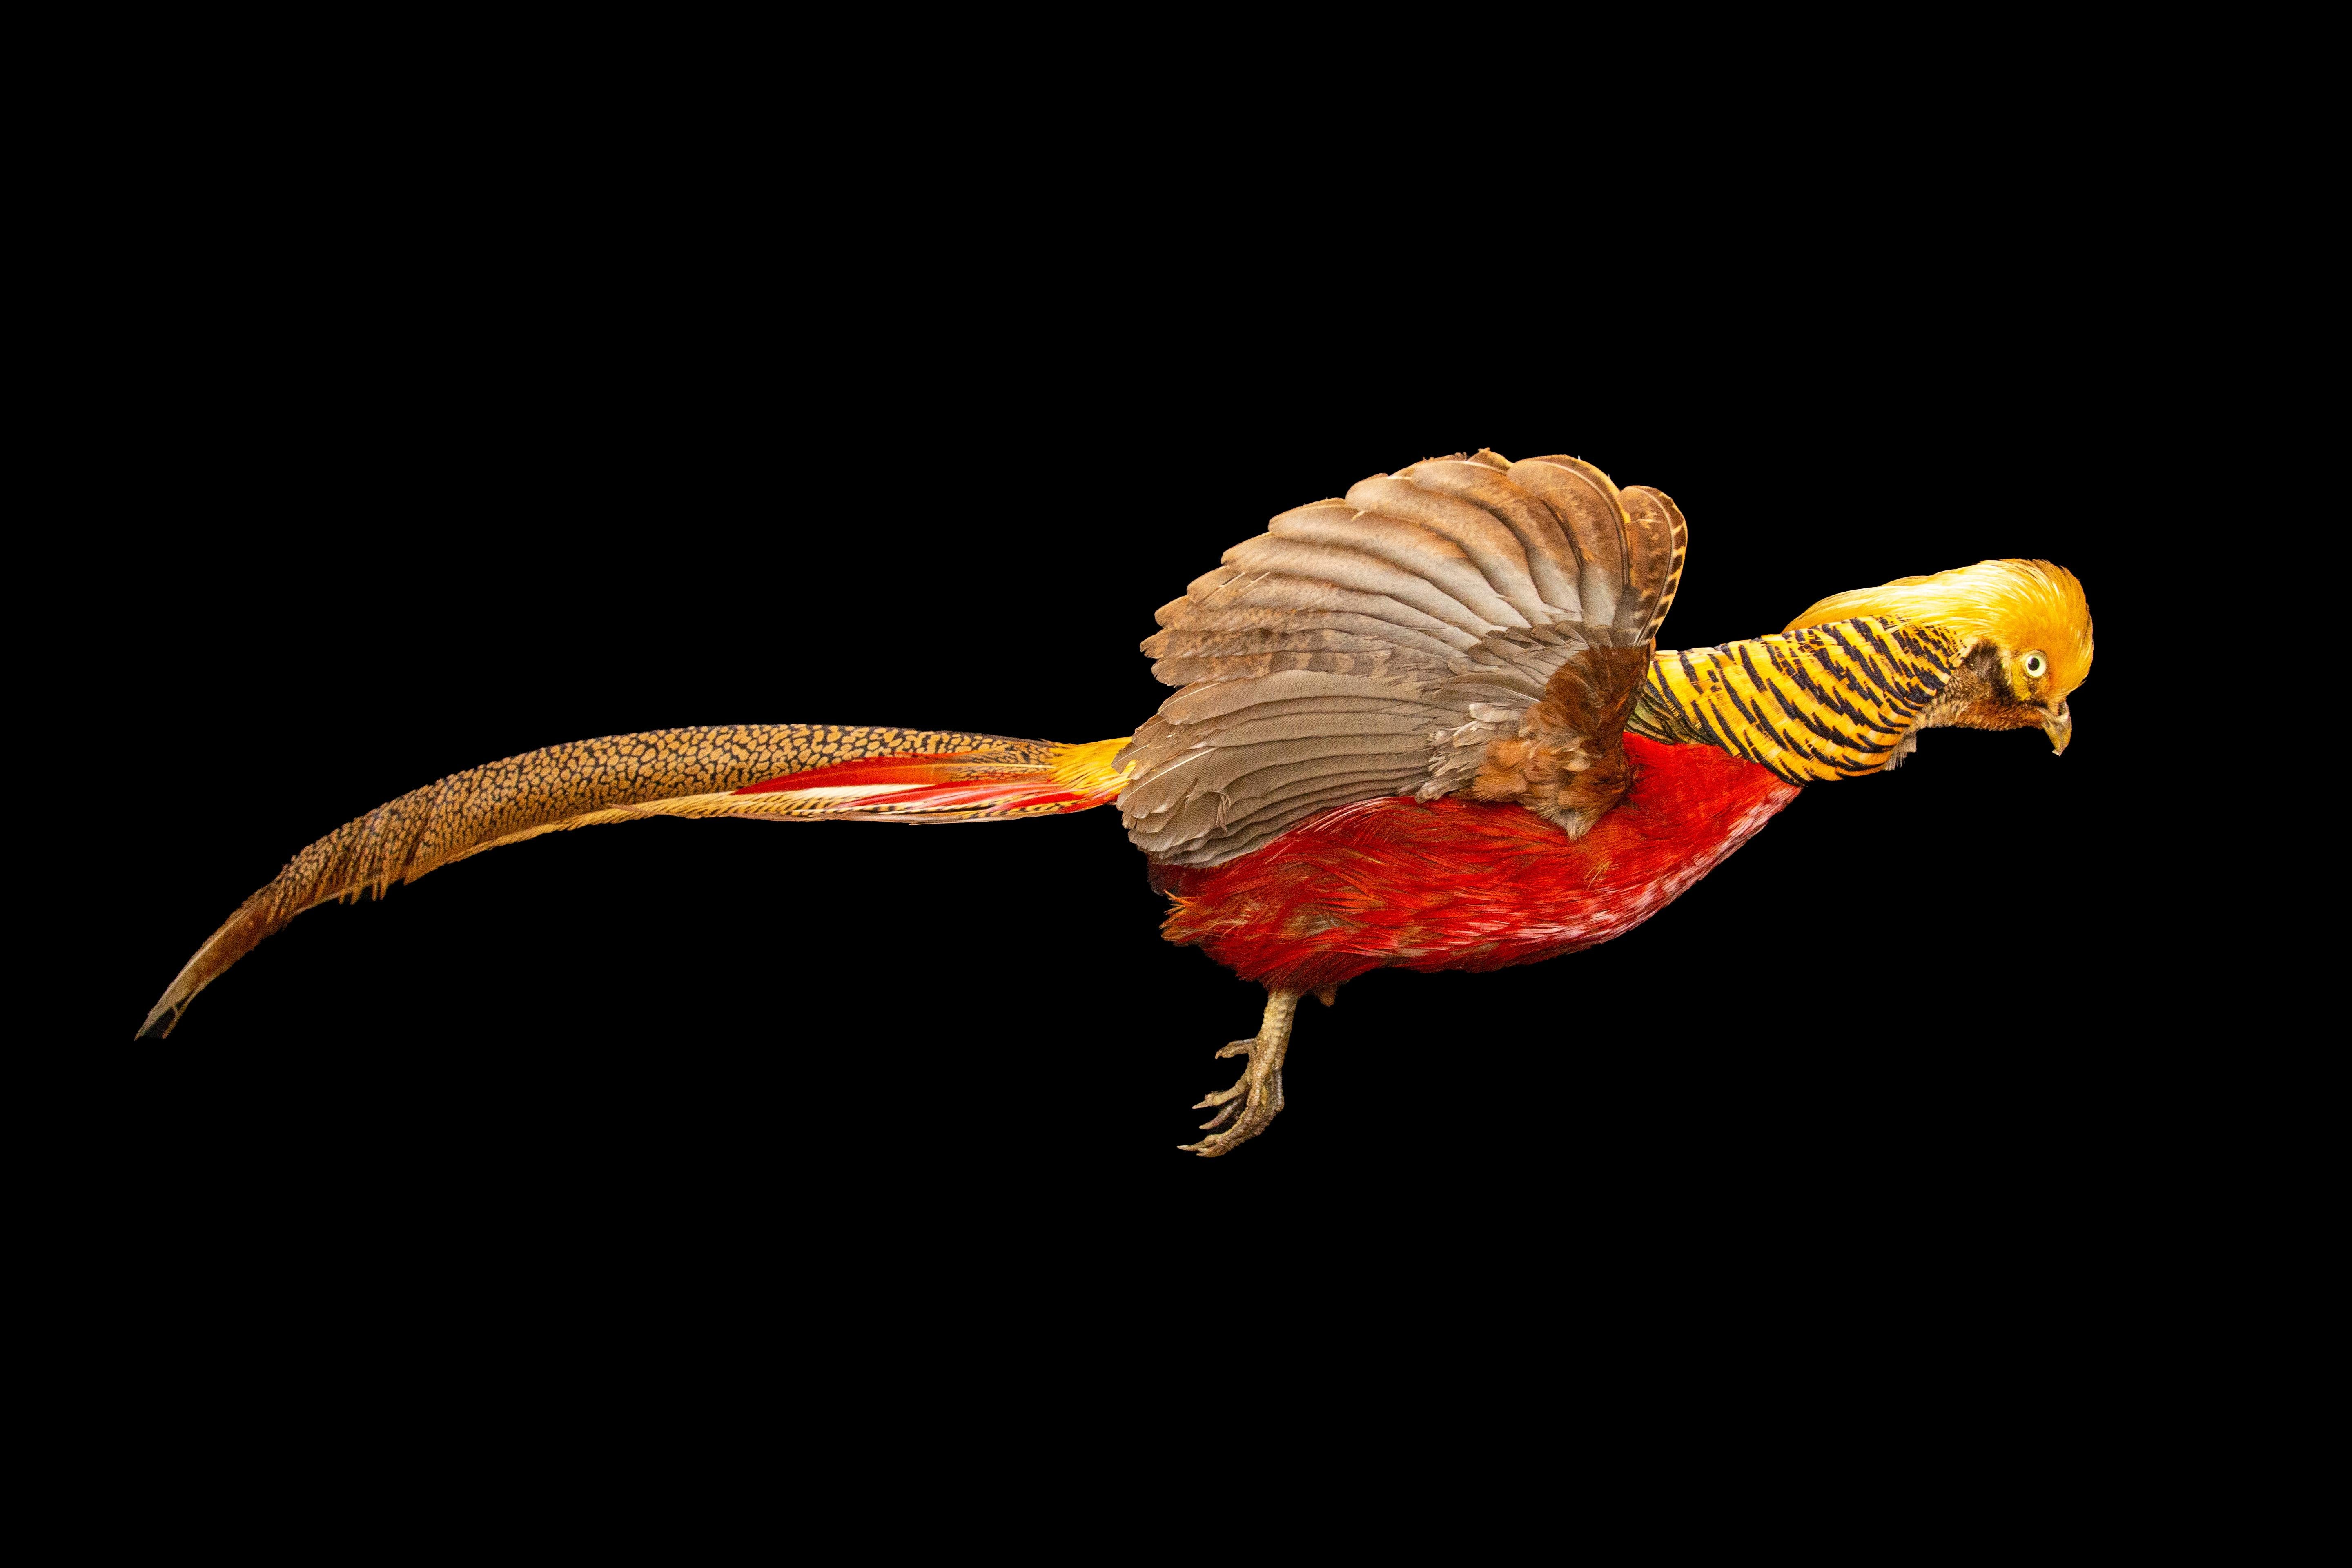 Cette exquise taxidermie de faisan doré volant est un ajout magnifique à toute collection ou exposition. L'oiseau a été conservé et monté de manière experte, et chaque plume est reproduite avec des détails réalistes. Le plumage doré et rouge